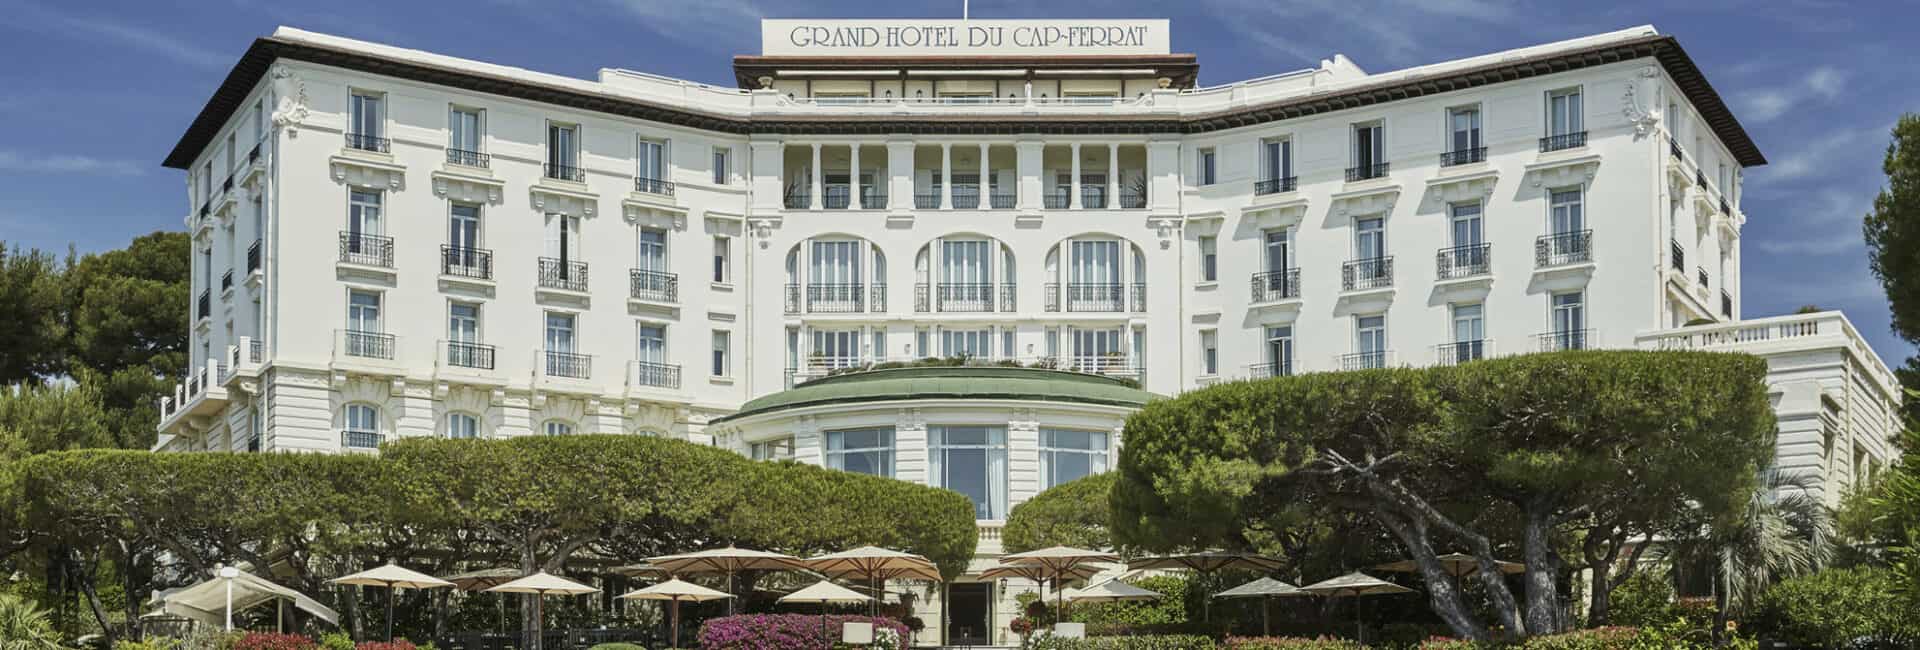 Four-Seasons-Grand-Hotel-du-Cap-Ferrat